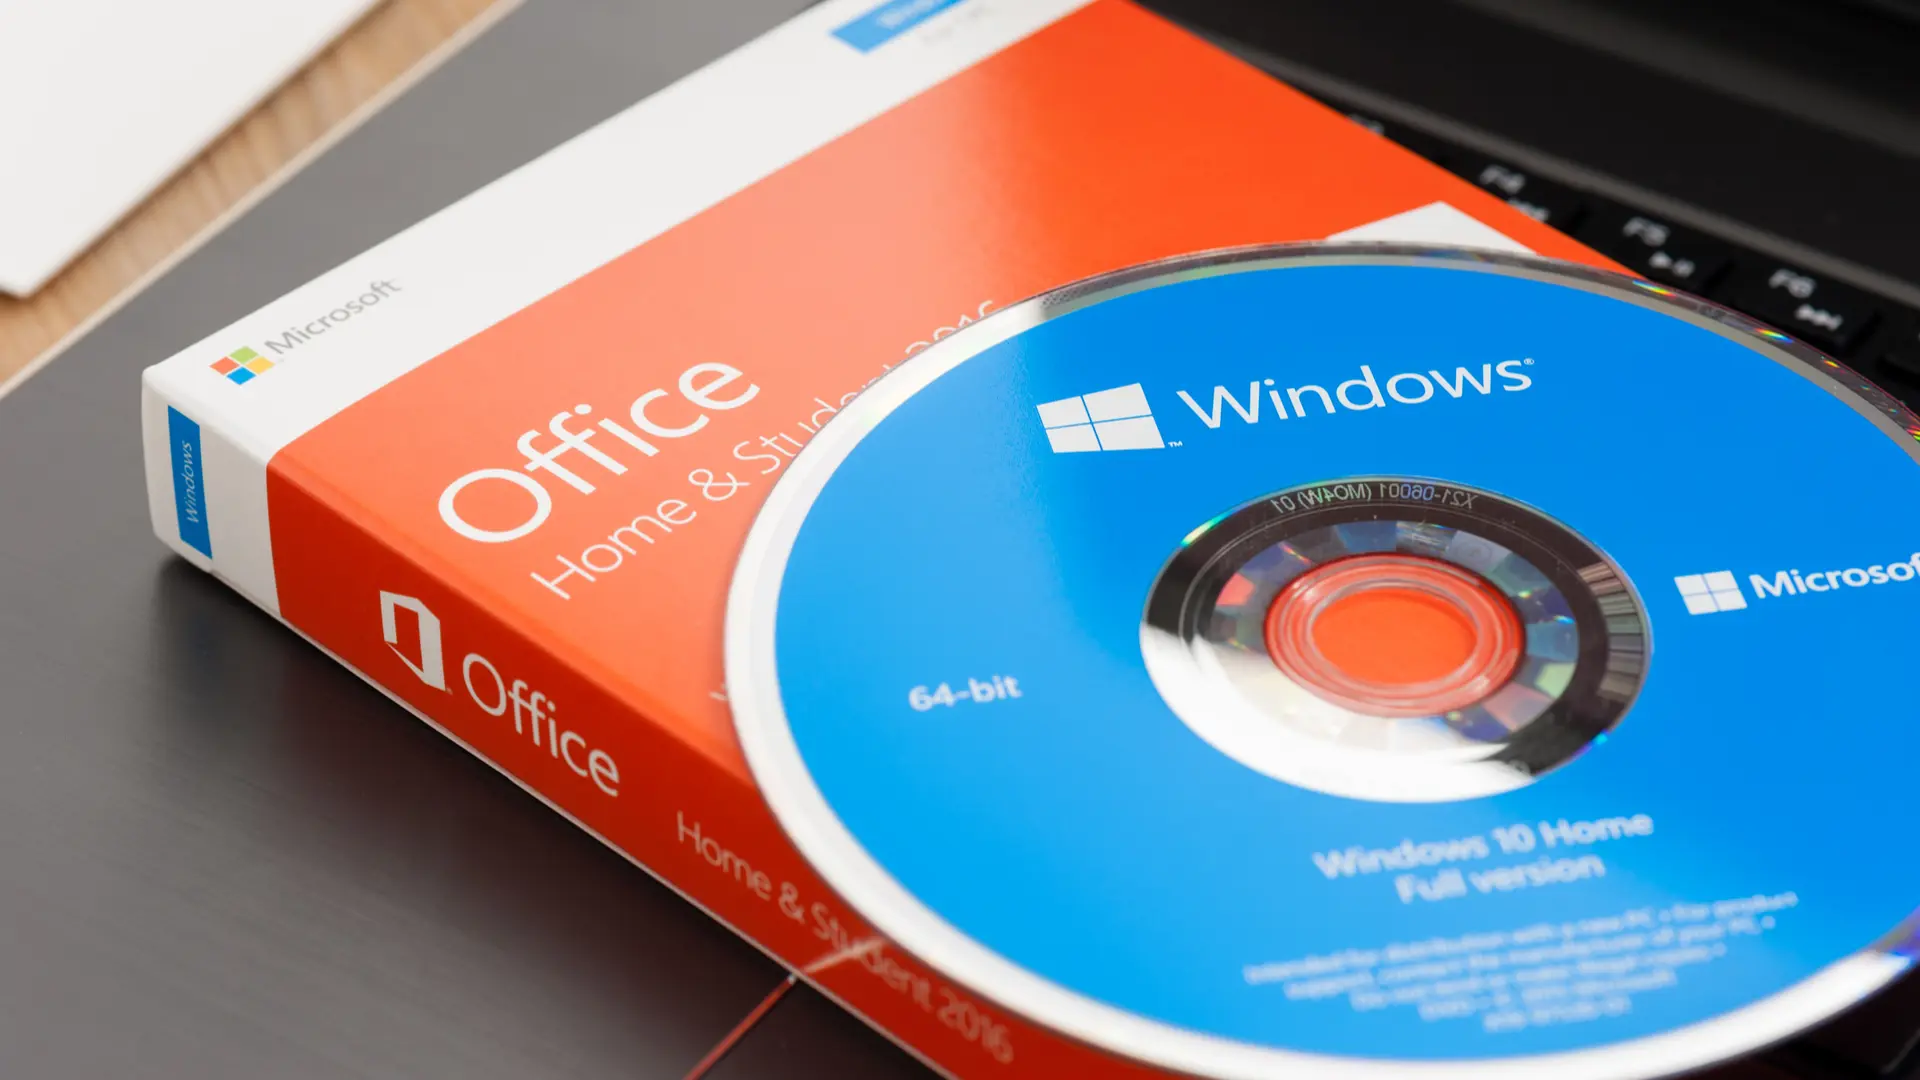 Compra tu licencia para Windows 10, Office 2016 y Office 2019 desde dólares